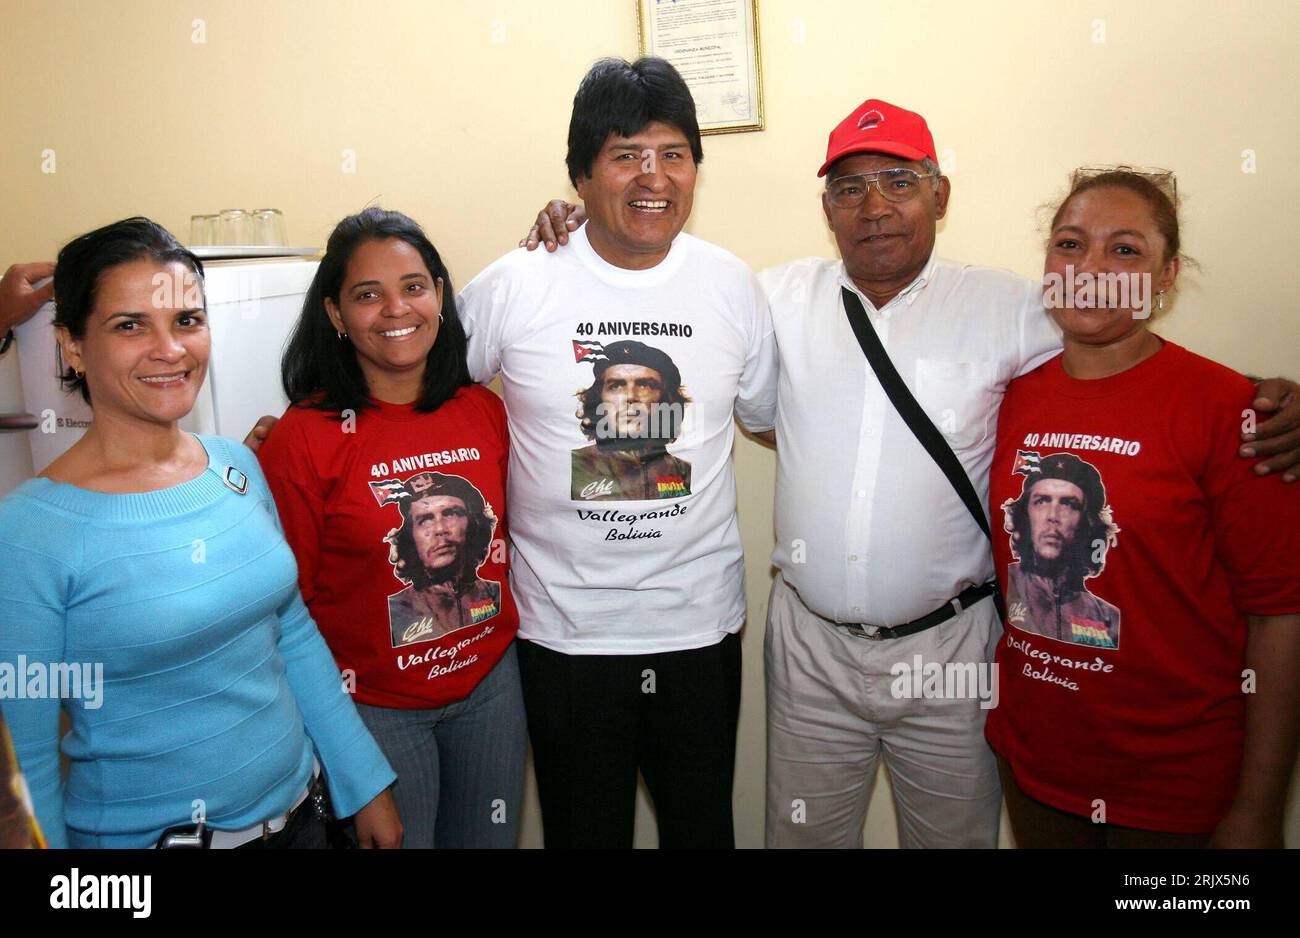 Bildnummer: 52153021  Datum: 08.10.2007  Copyright: imago/Xinhua Präsident Juan Evo Morales Ayma (BOL) am Rande einer Gedenkfeier zu Ehren Ernesto Che Guevaras anlässlich dessen 40. Todestages in Vallegrande - Bolivien - PUBLICATIONxNOTxINxCHN, Personen , optimistisch; 2007, Vallegrande, Guevara, Gedenken, 40. Todestag, Jubiläumsveranstaltungen, Politiker, Politik, Shirt, Bekleidung, Outfit, Pressetermin; , quer, Kbdig, Gruppenbild, close, Bolivien,  , People  o0 Staatspräsident Stock Photo